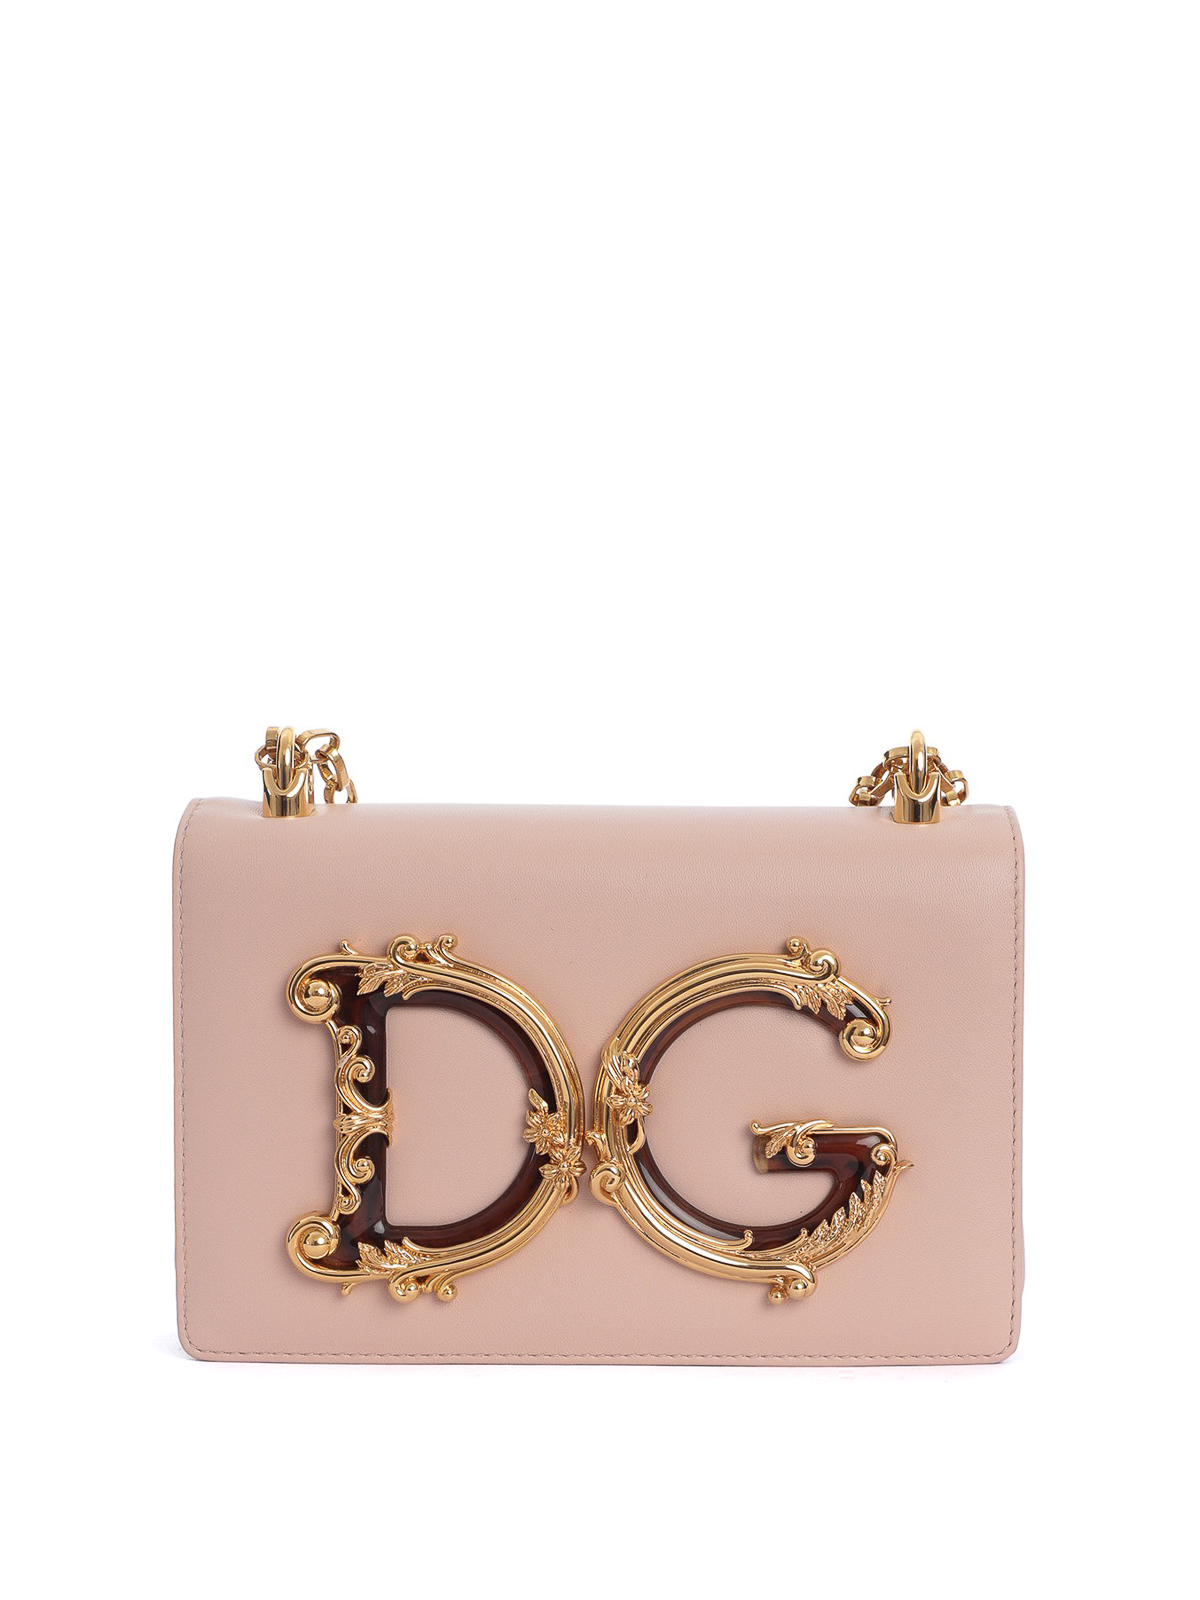 Dolce & Gabbana Dg Girls Light Pink Nappa Shoulder Bag